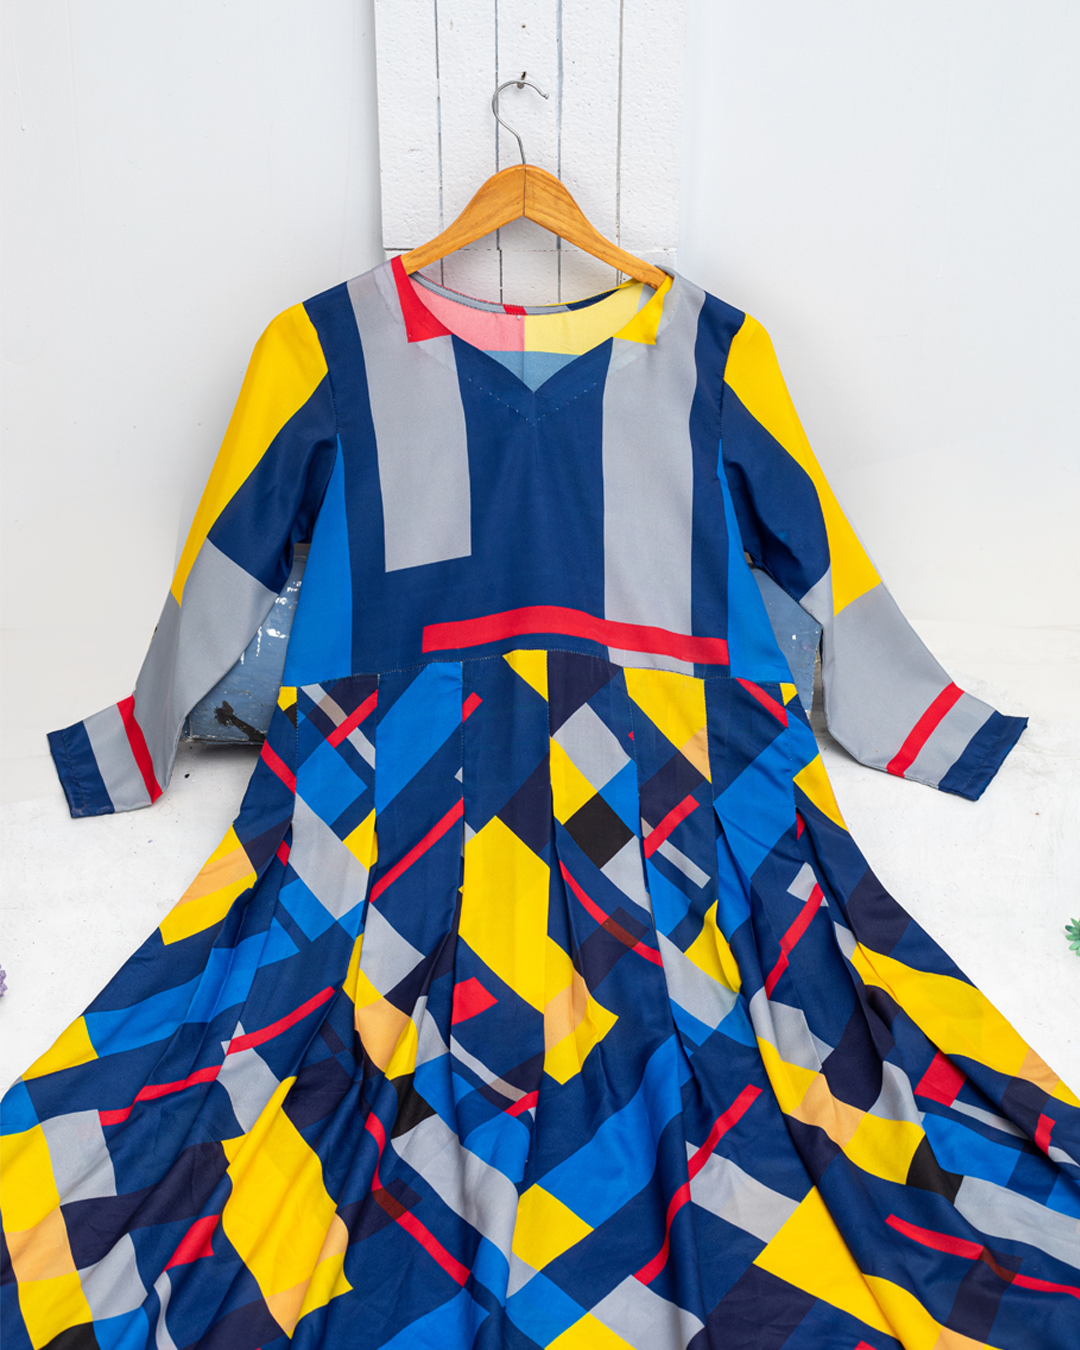 Bohemian V-neck Geometric Print Long Maxi Dress - Winter Collection by Qasim Yaqoob